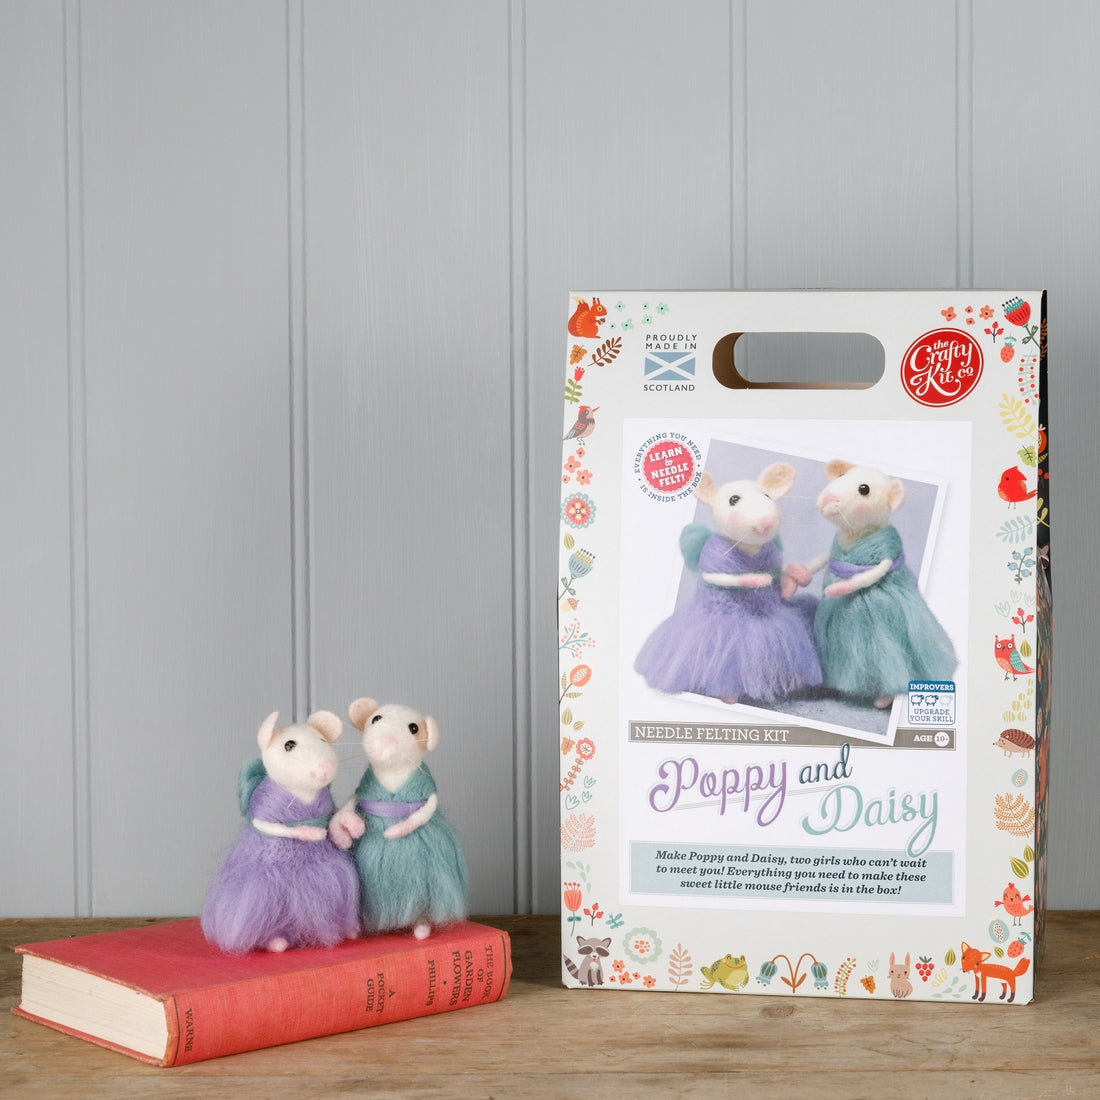 Poppy & Daisy Mice Needle Felting Kit - The Crafty Kit Company